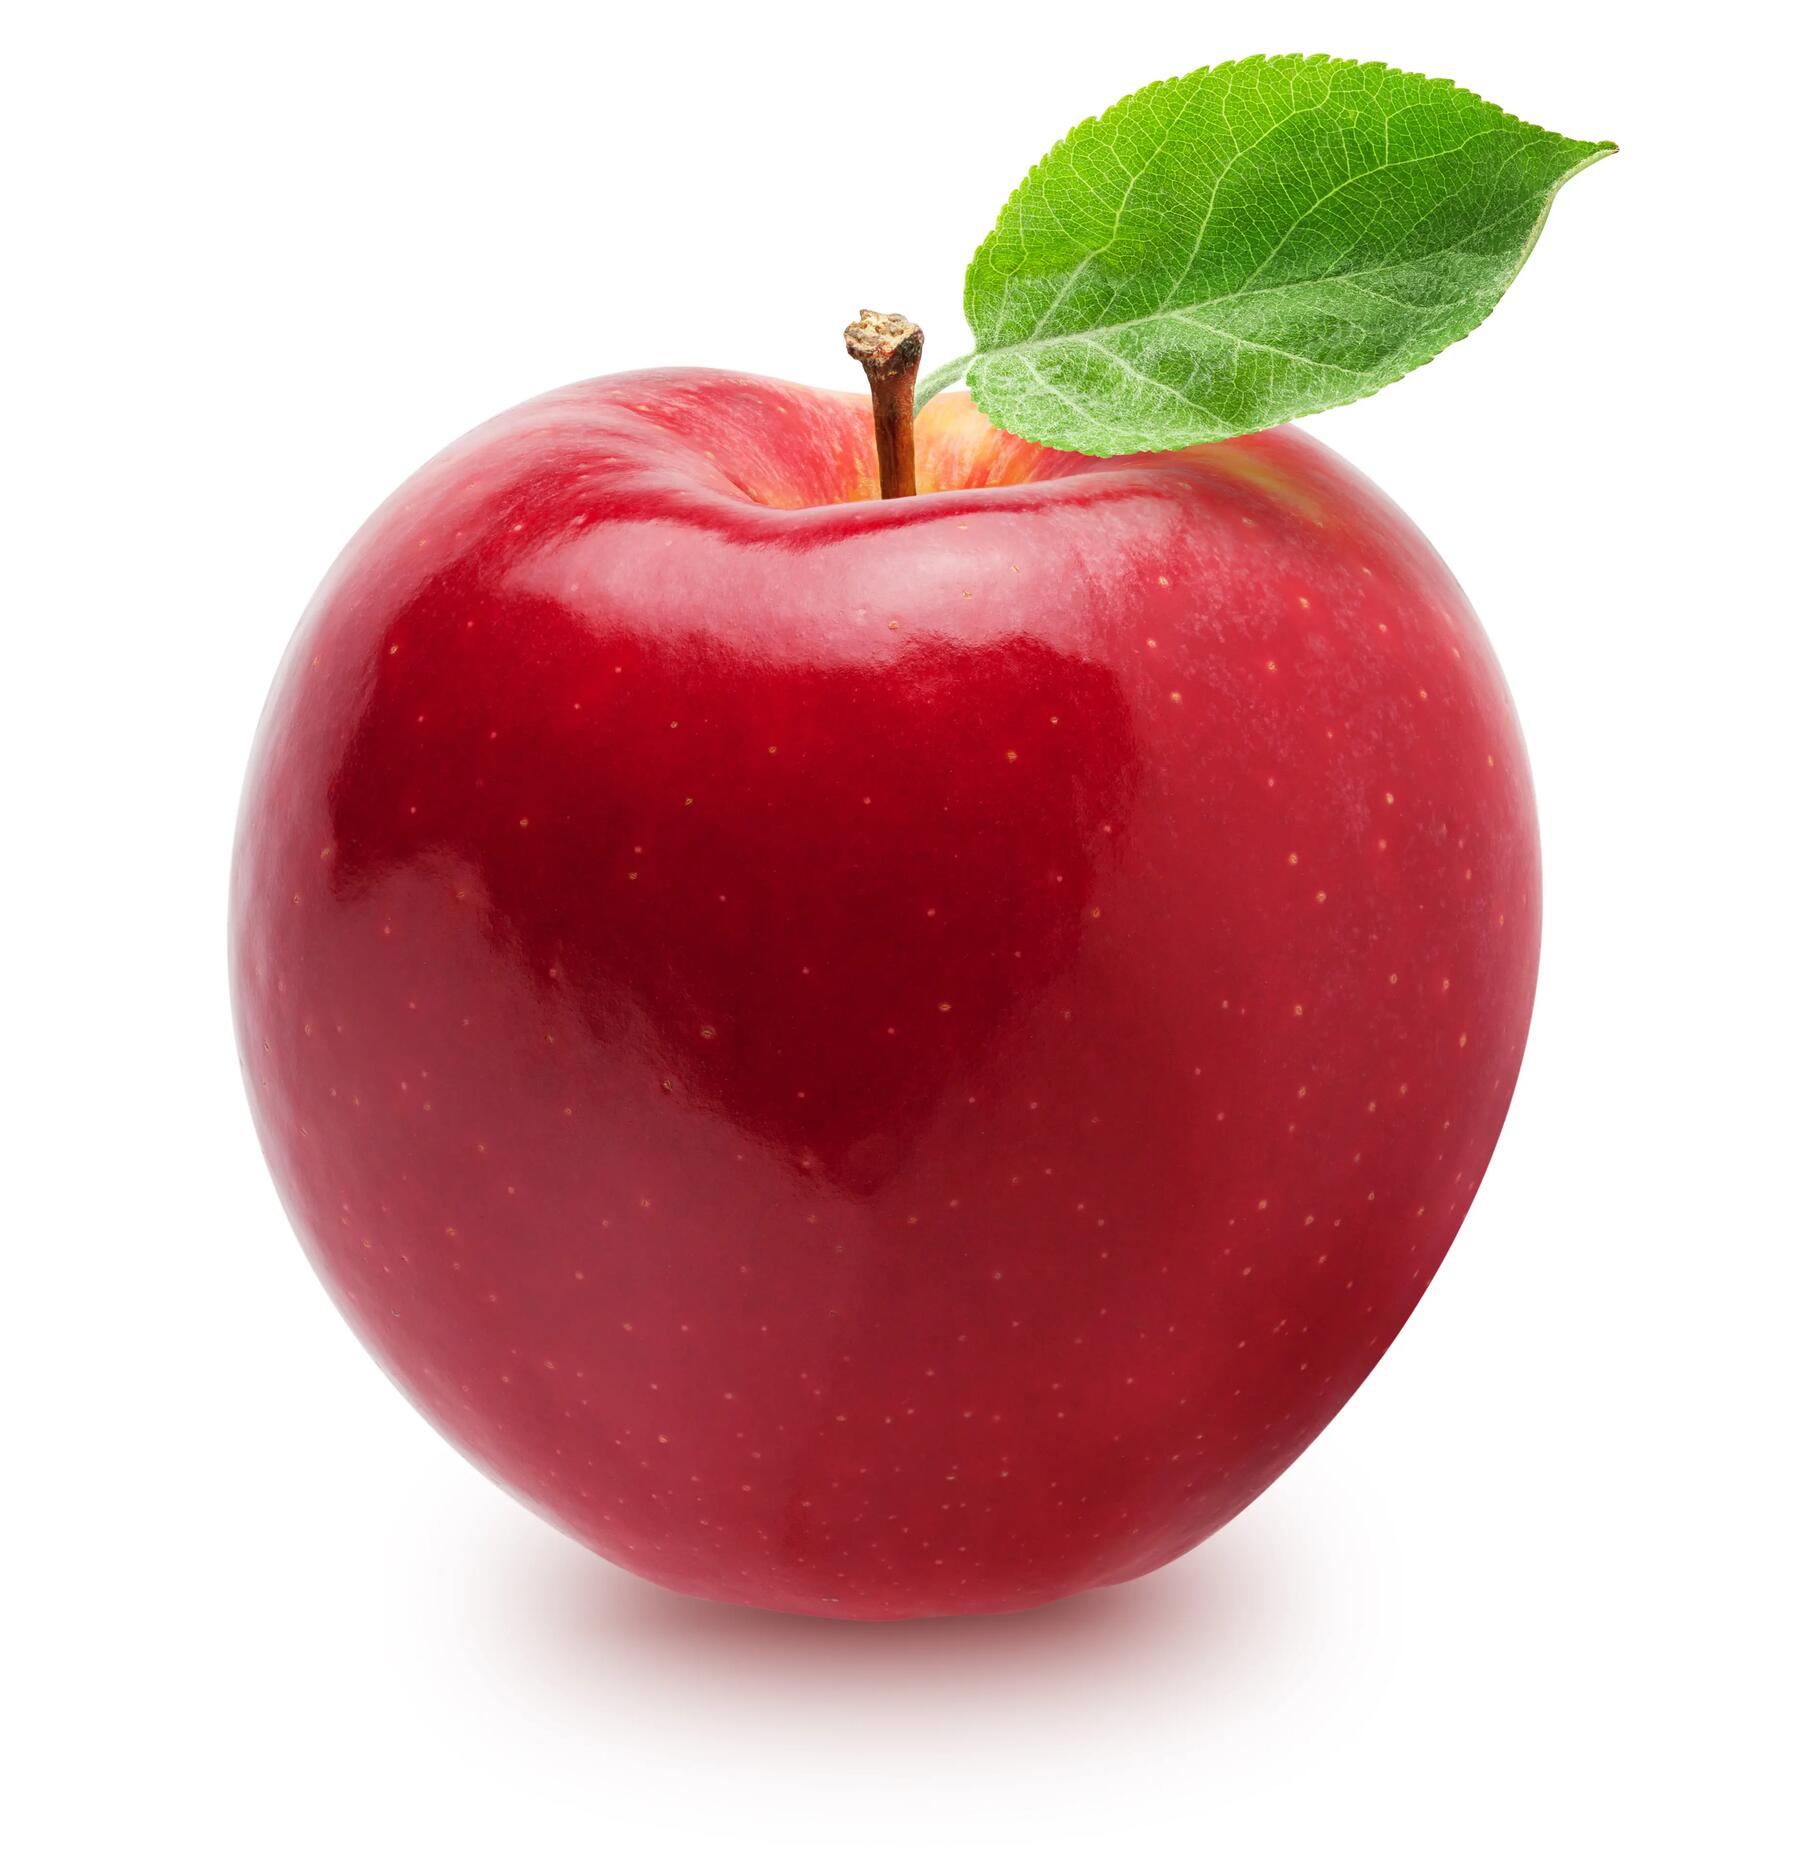 Quels sont les bienfaits de la pomme ?